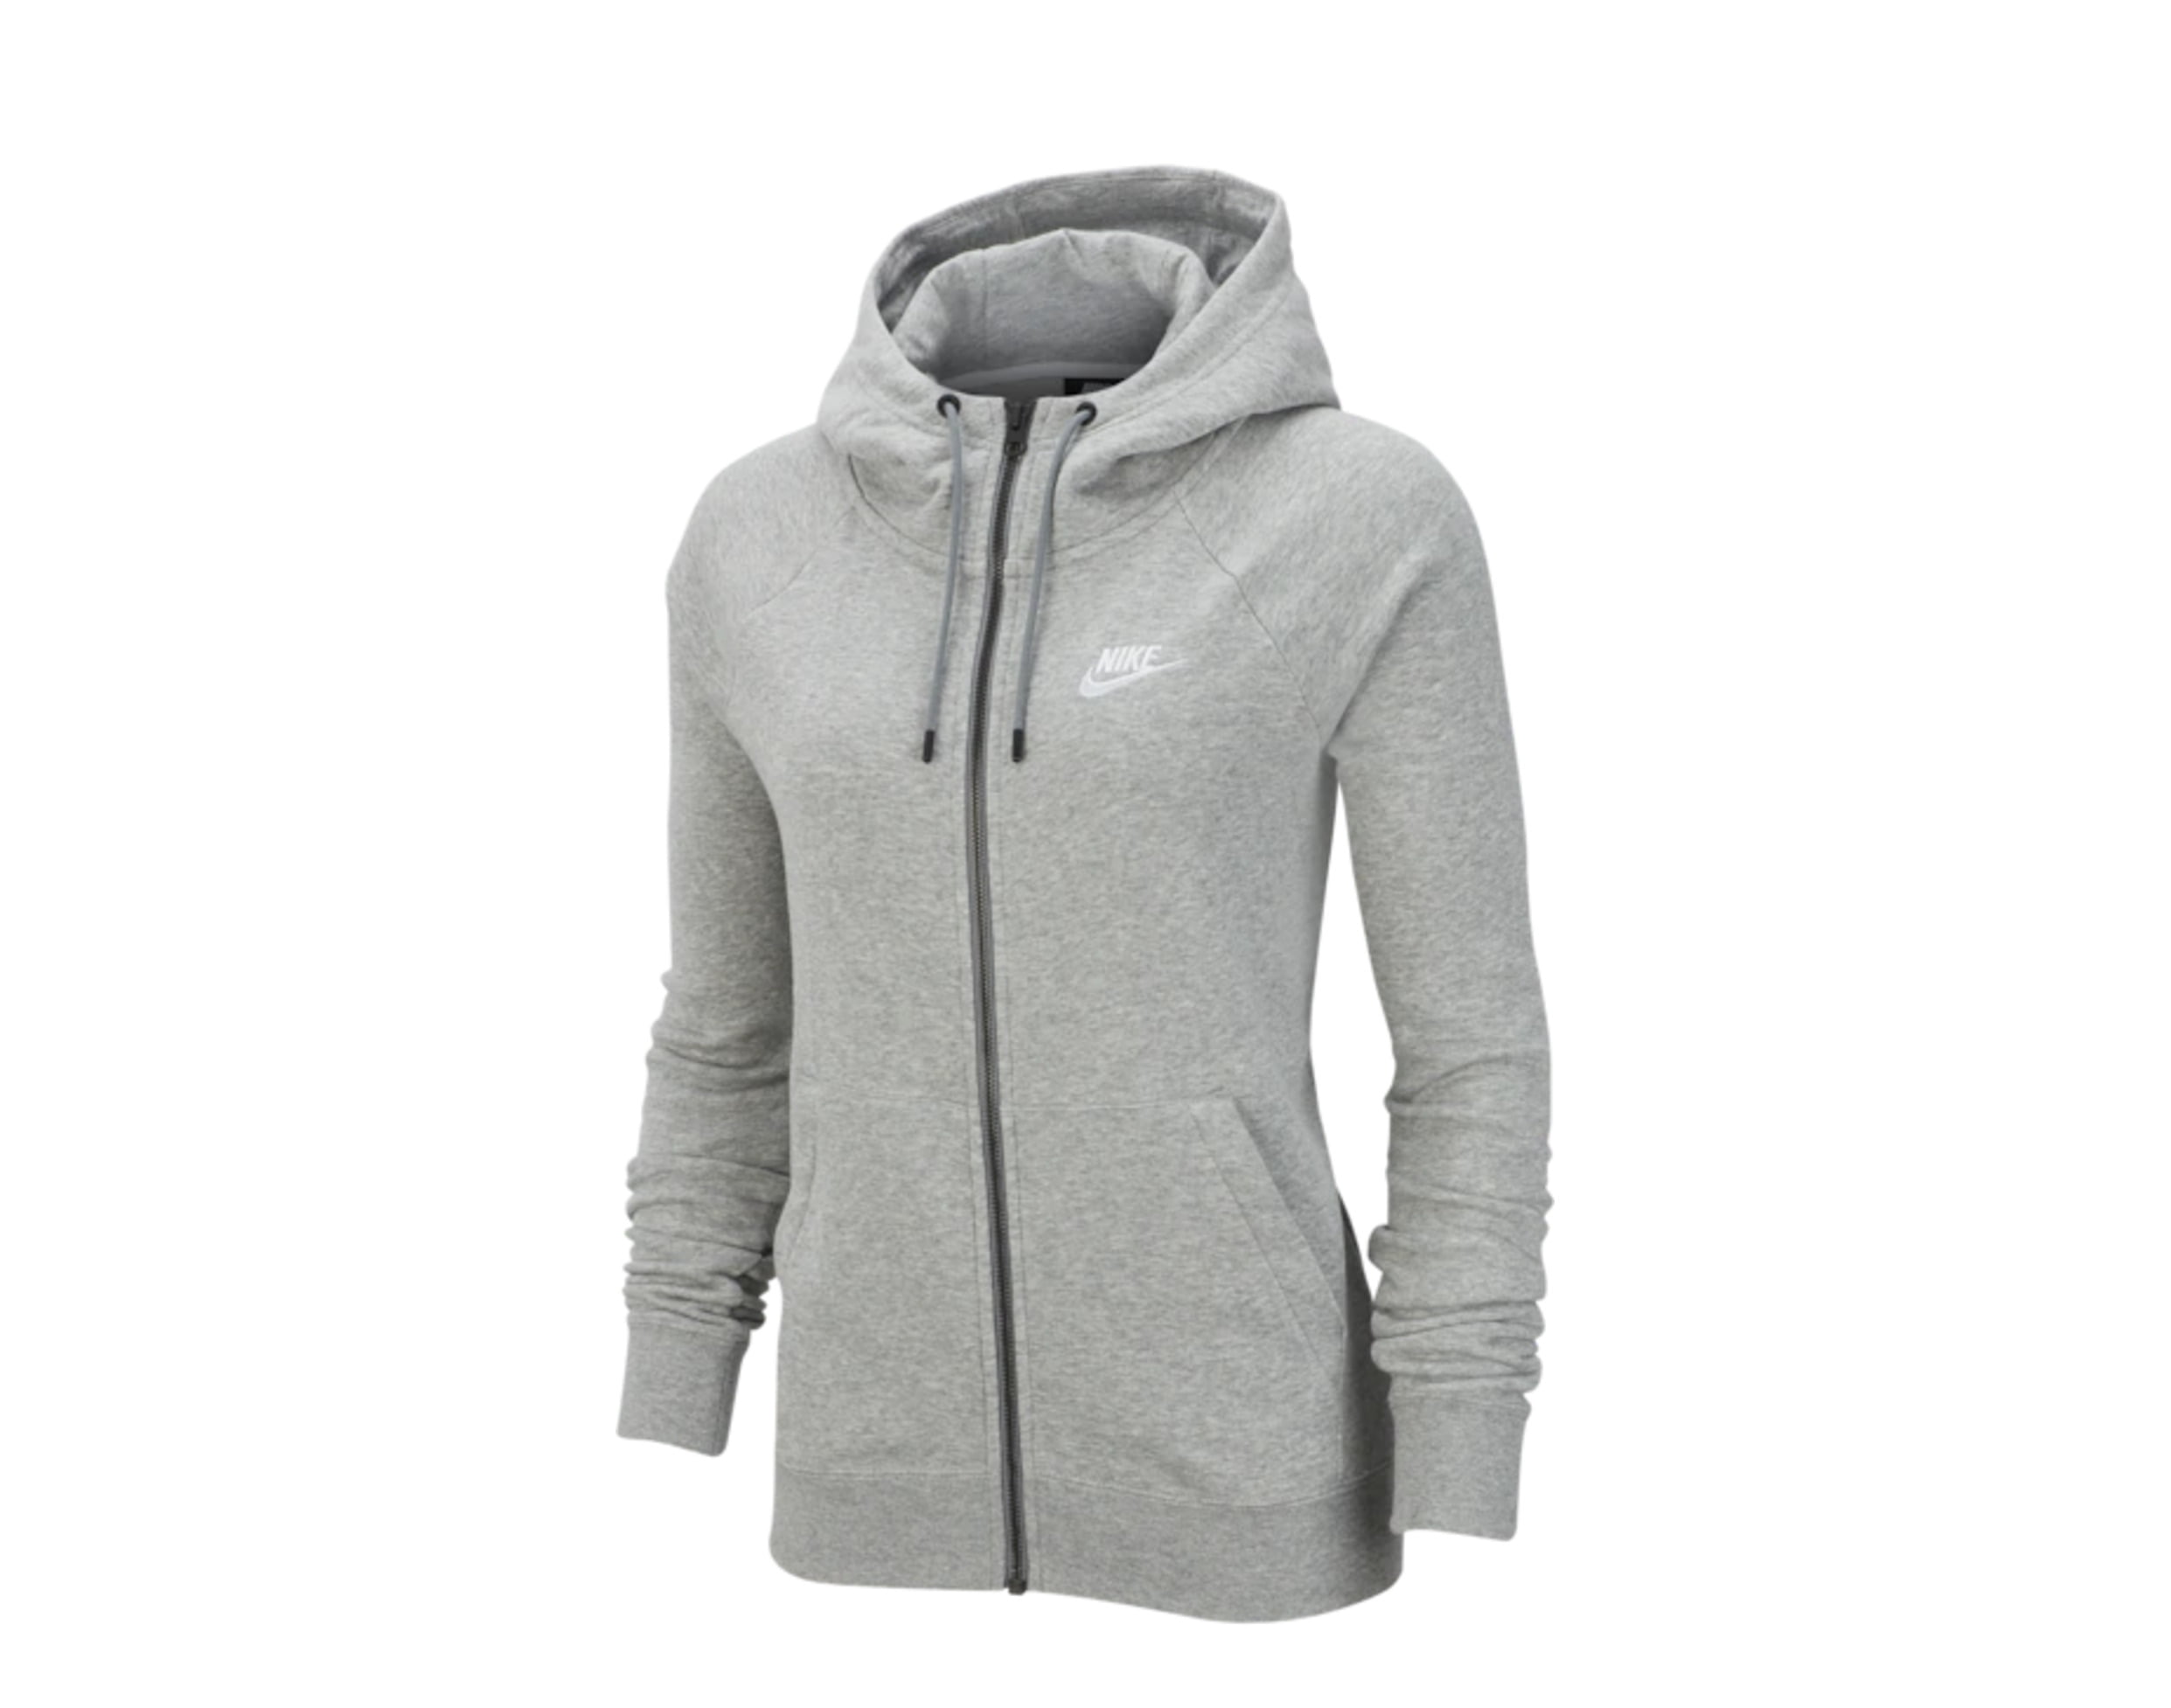 grey and black nike zip up hoodie